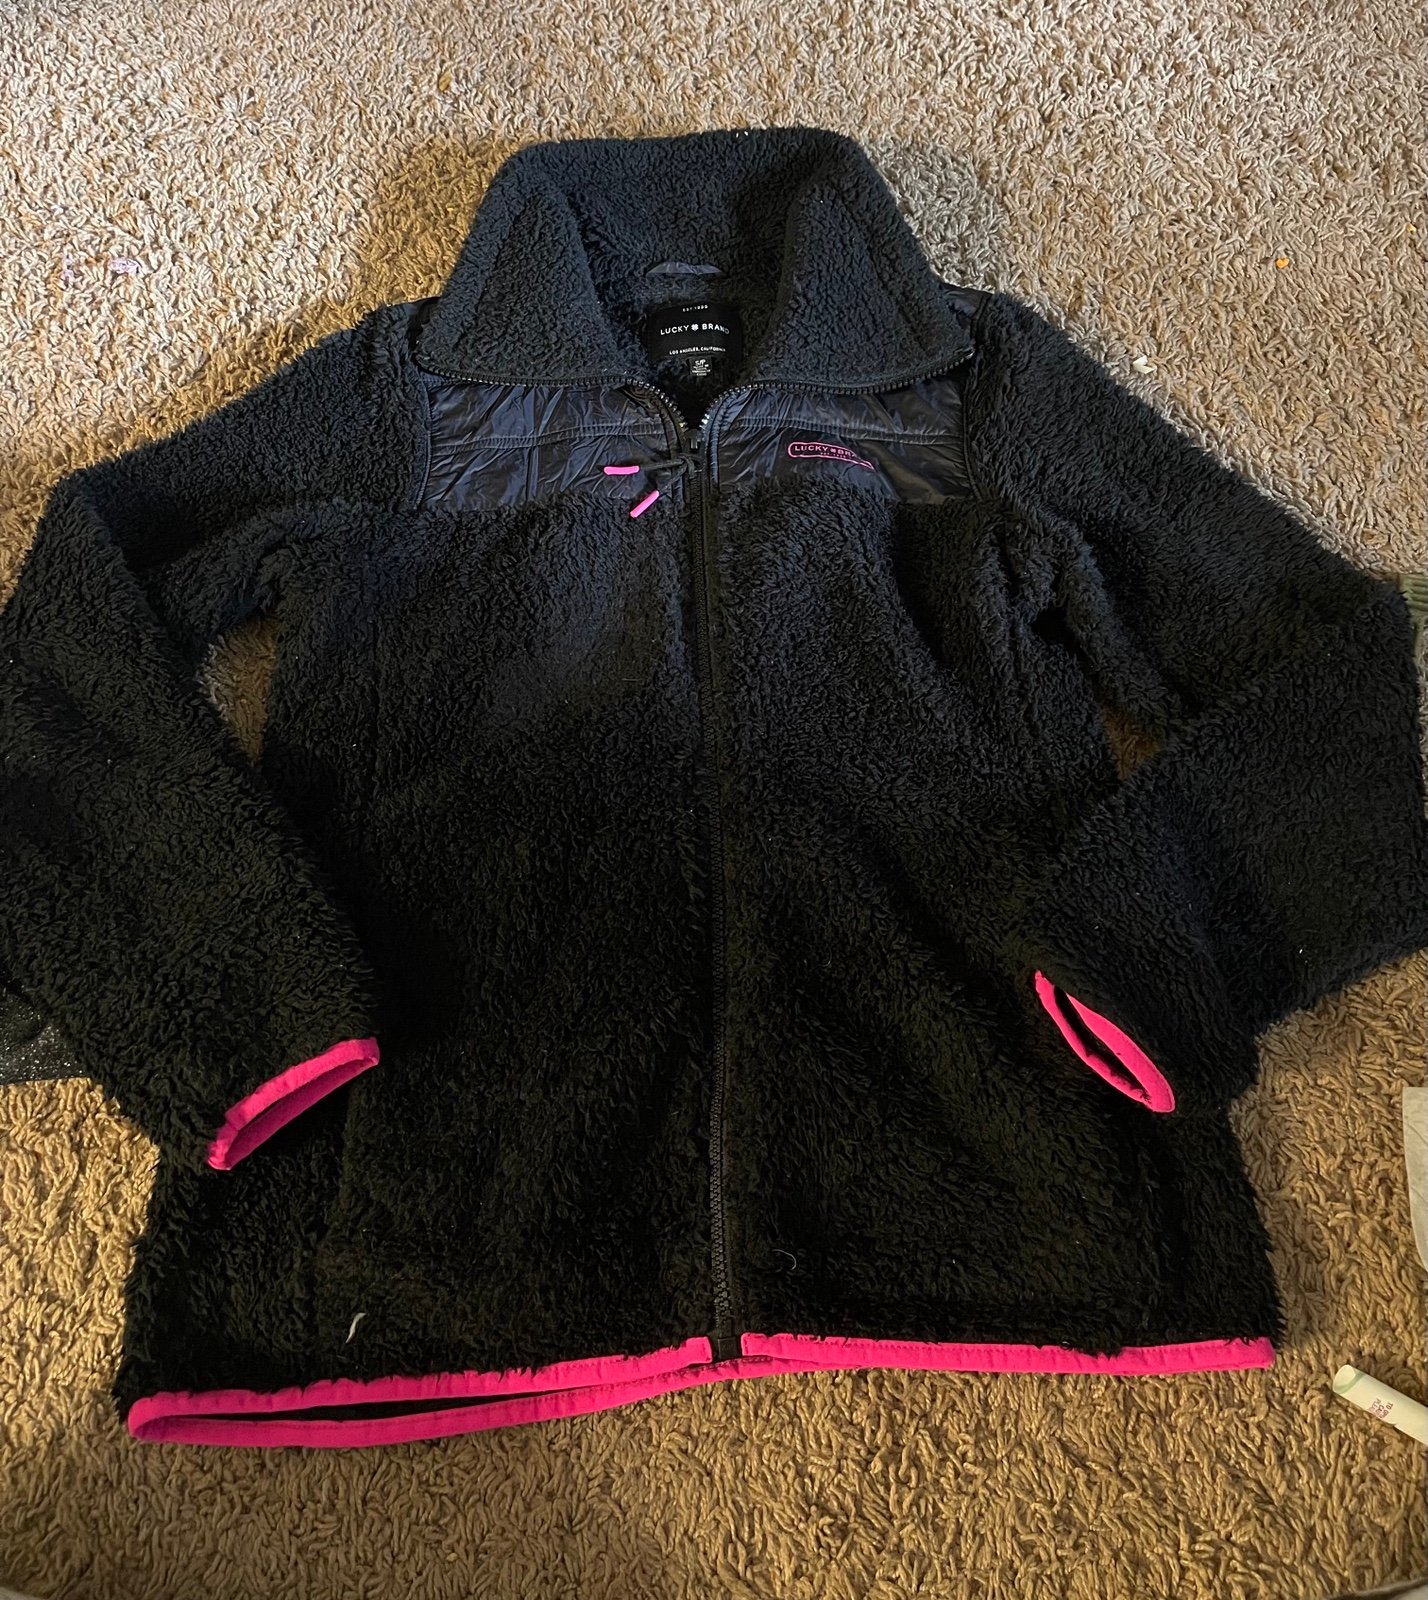 fleece zip up sweatshirt size small fNSex3myo